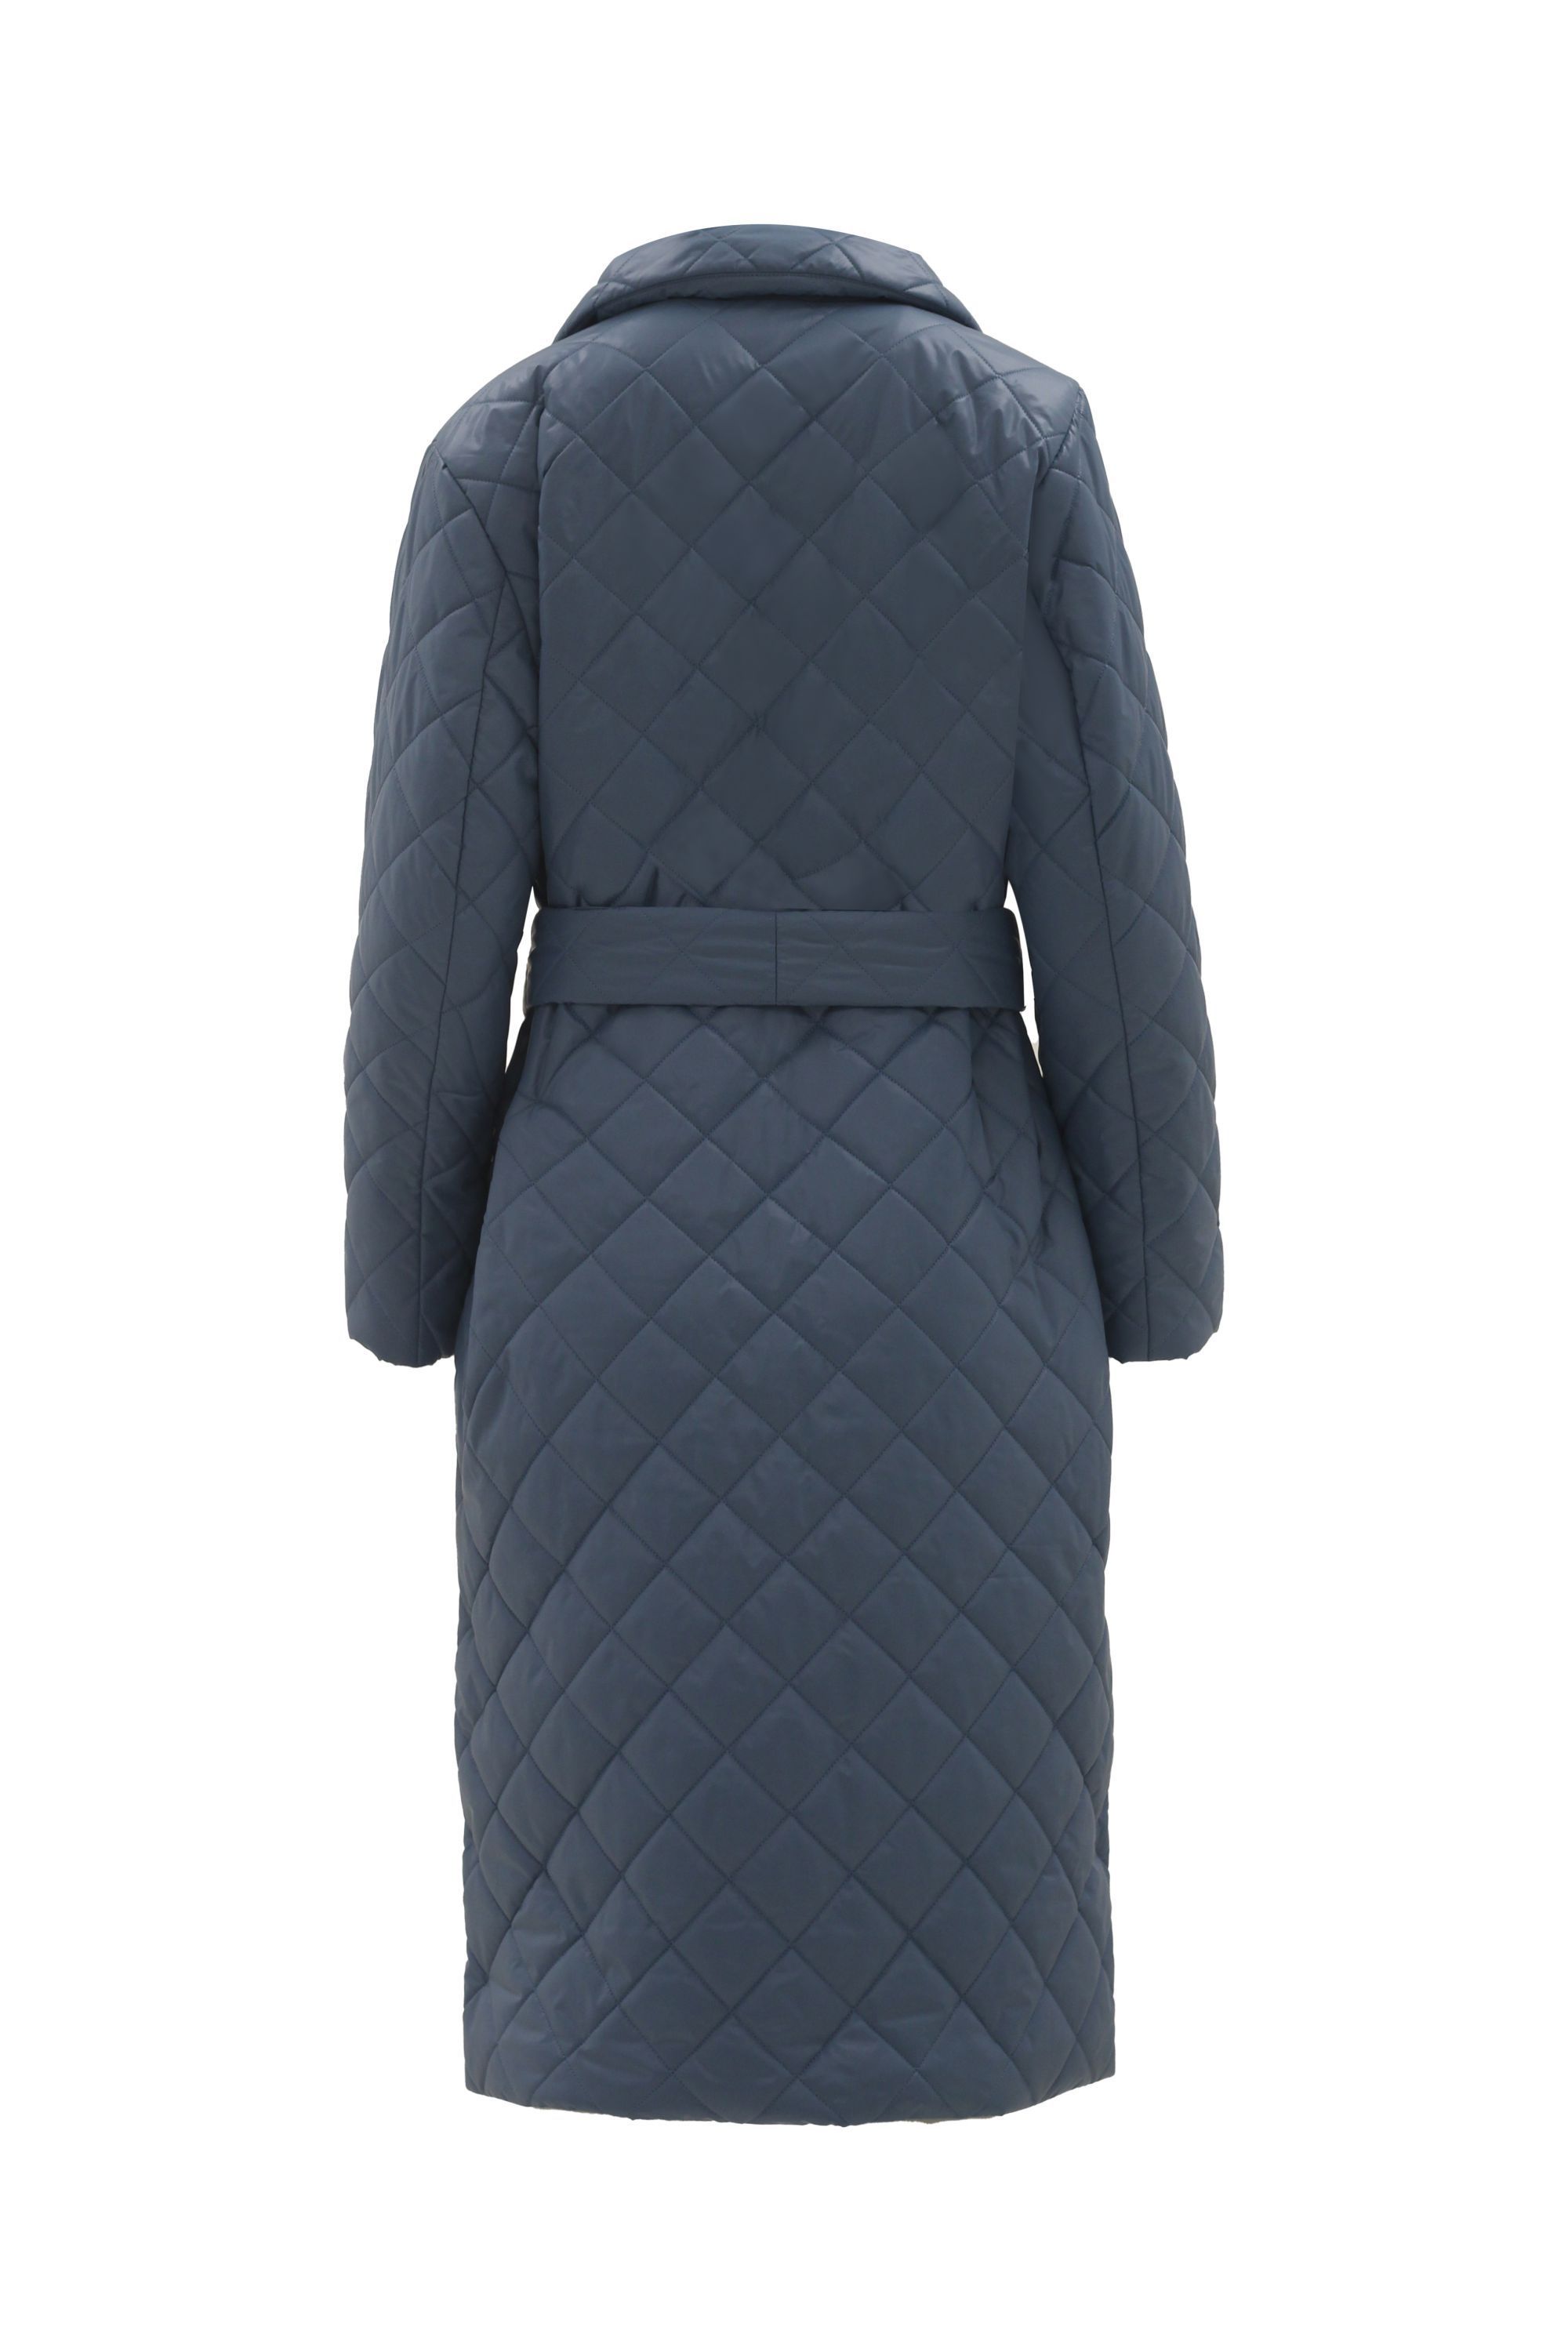 Пальто женское плащевое утепленное 5-12115-1. Фото 3.